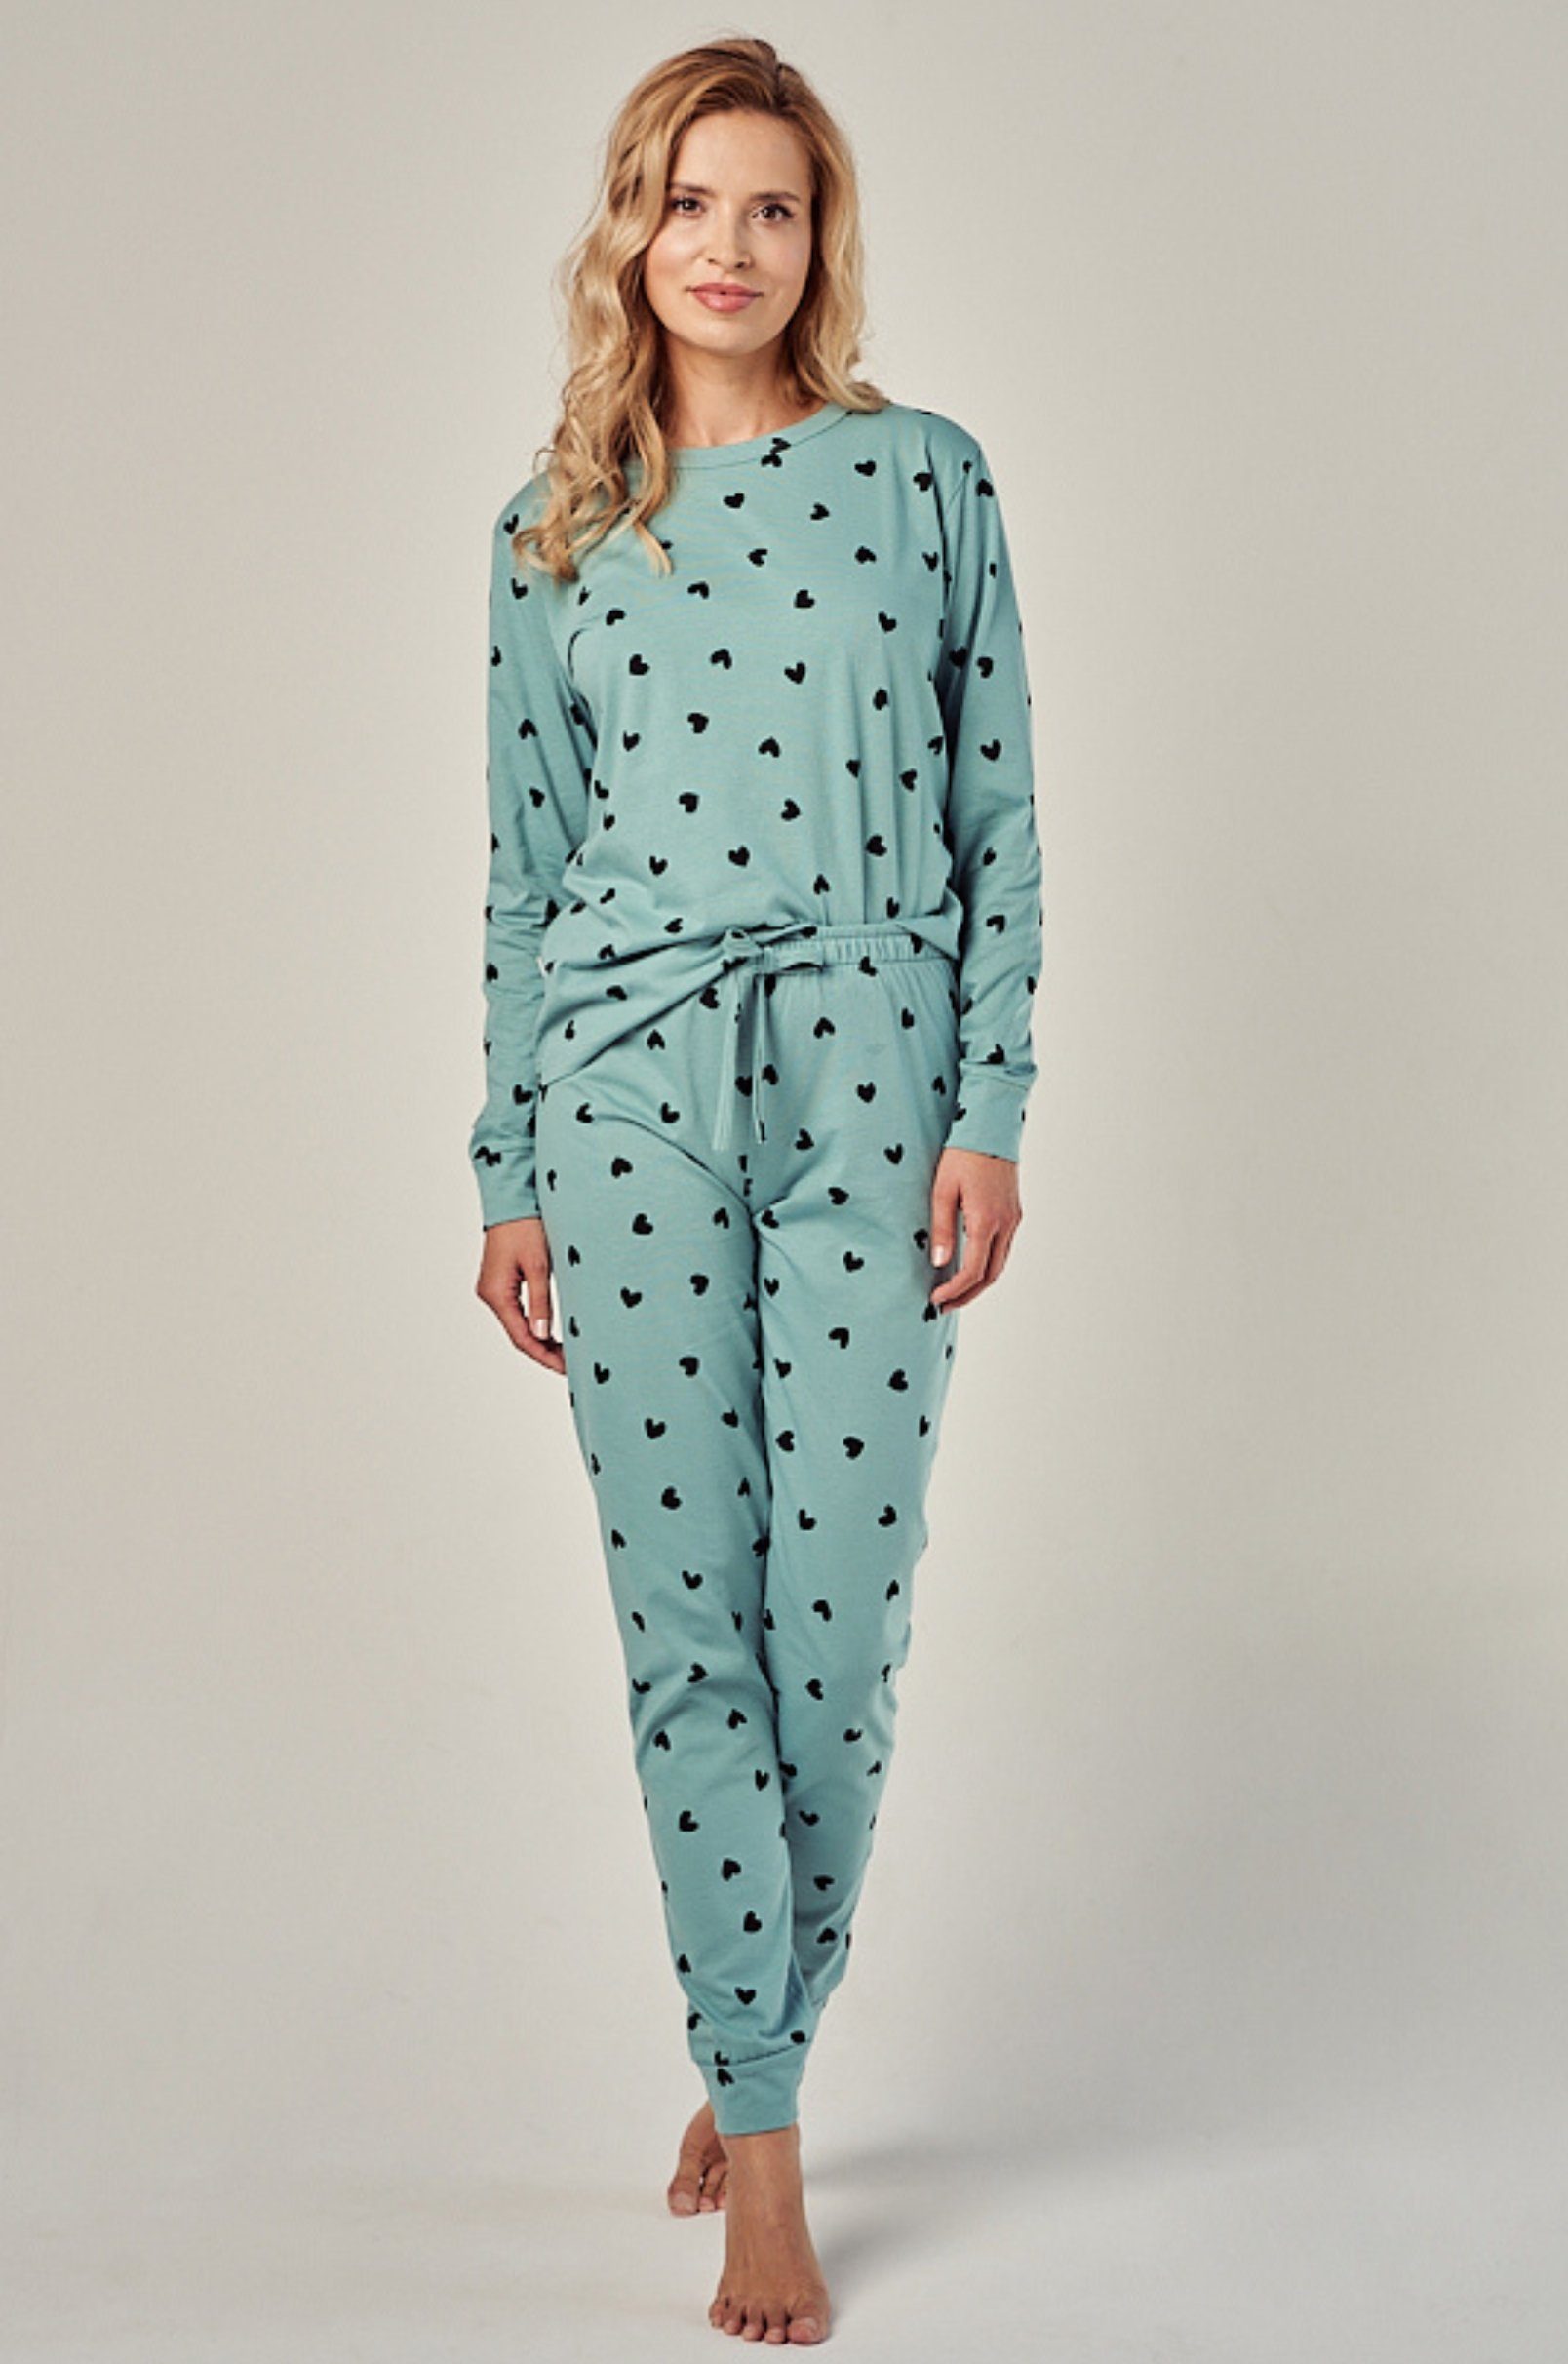 Mademoiselle in Pyjama tlg) Schlafanzug mit Sommeil (2 Damen Herzdruck dunkelgrün